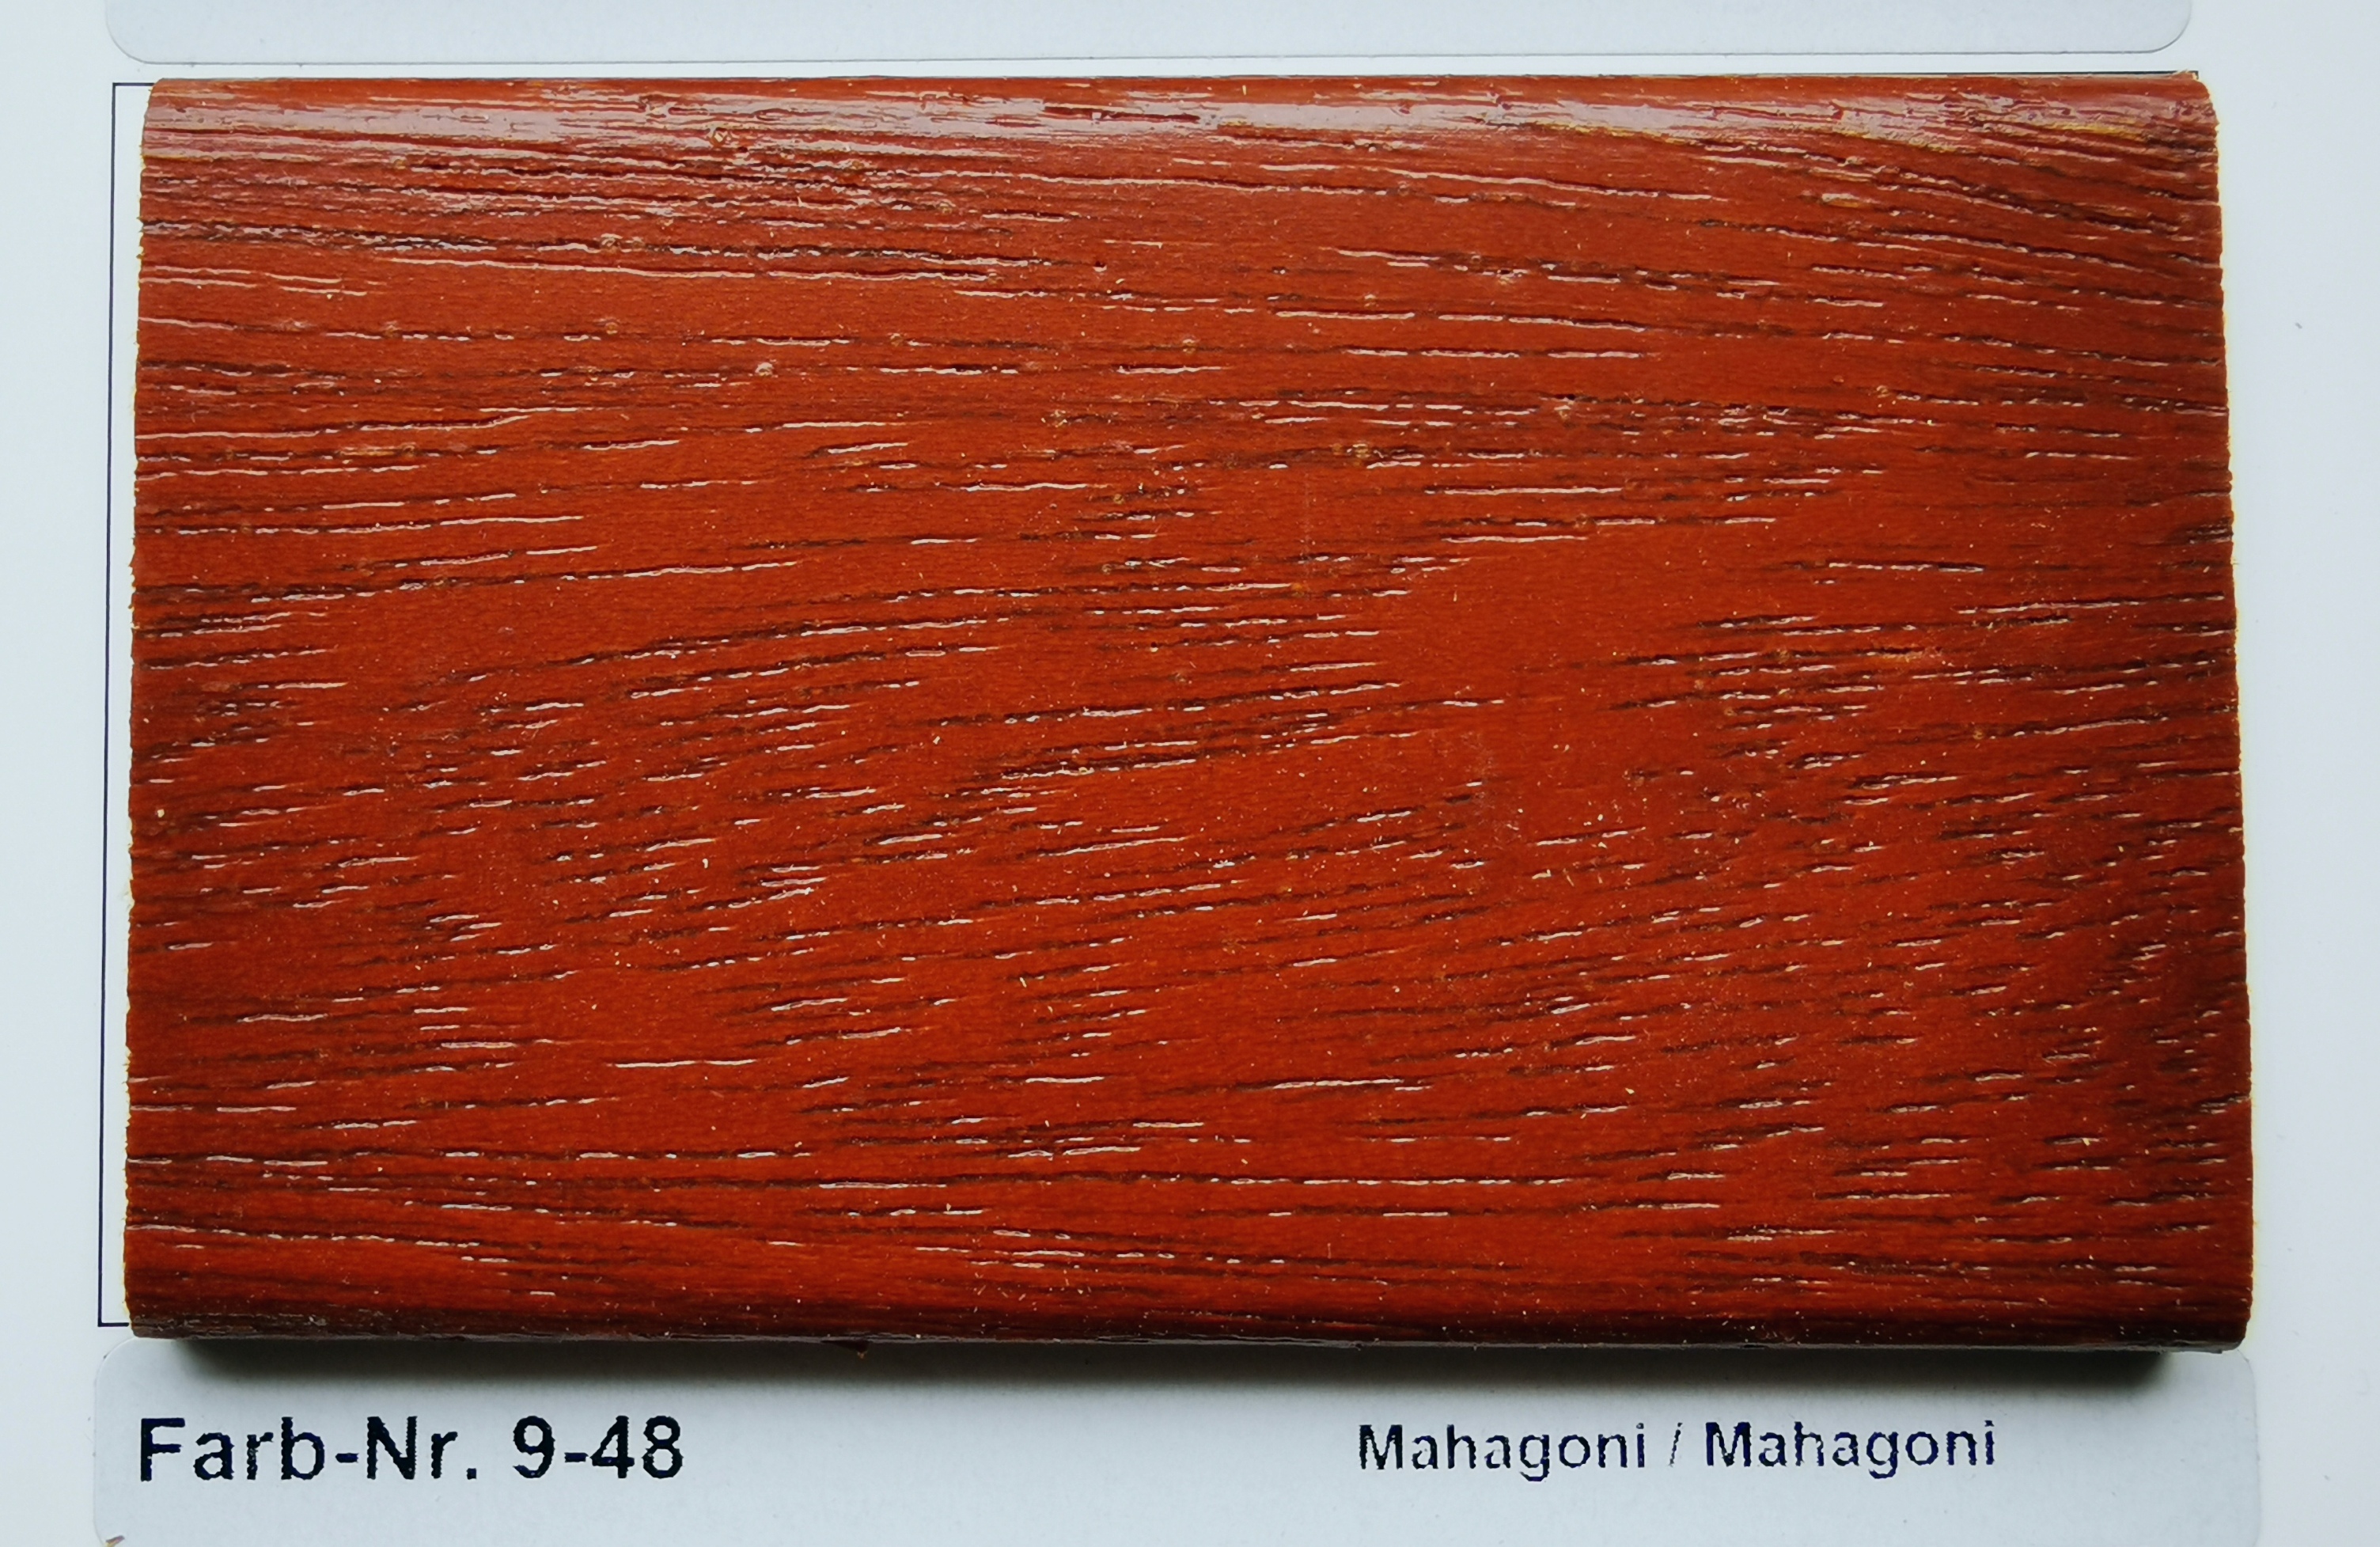 Farb-Nr. 9-48 Mahagoni / Mahagoni